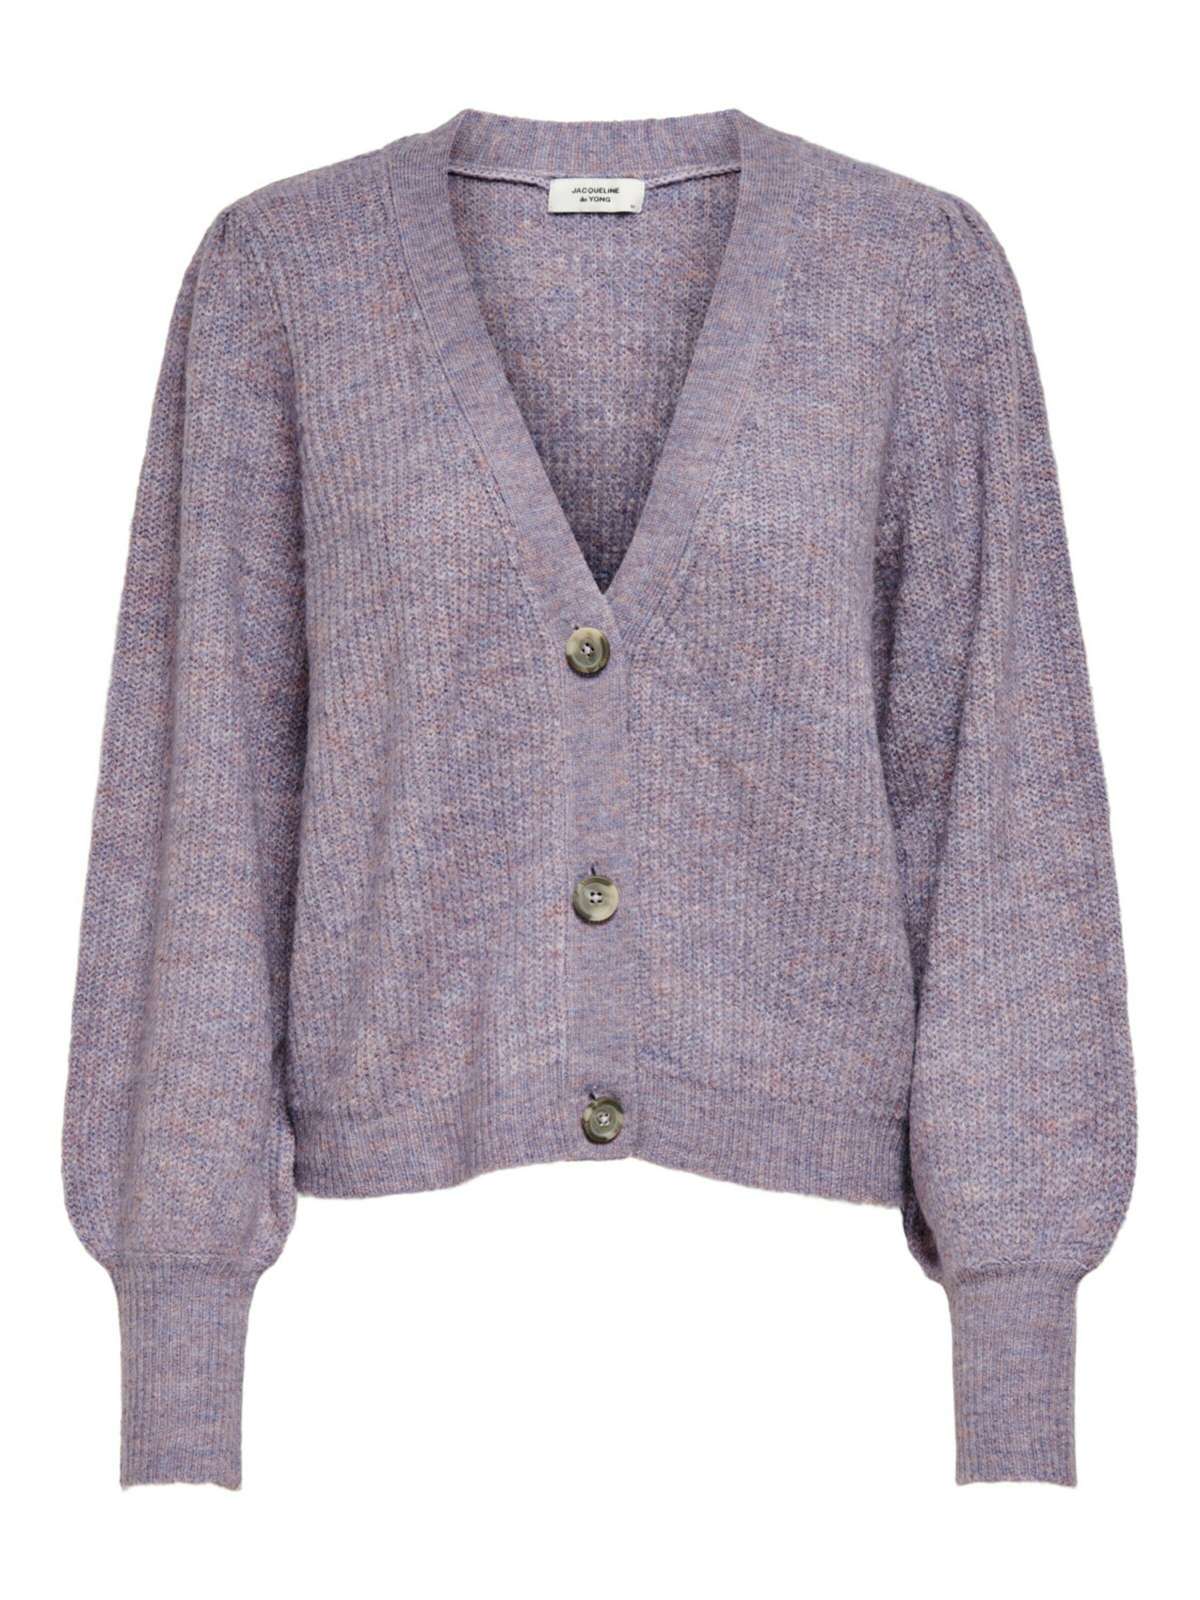 JACQUELINE de YONG вязаный свитер короткий вязаный свитер DREA кардиган с пышными рукавами 3696 фиолетового цвета